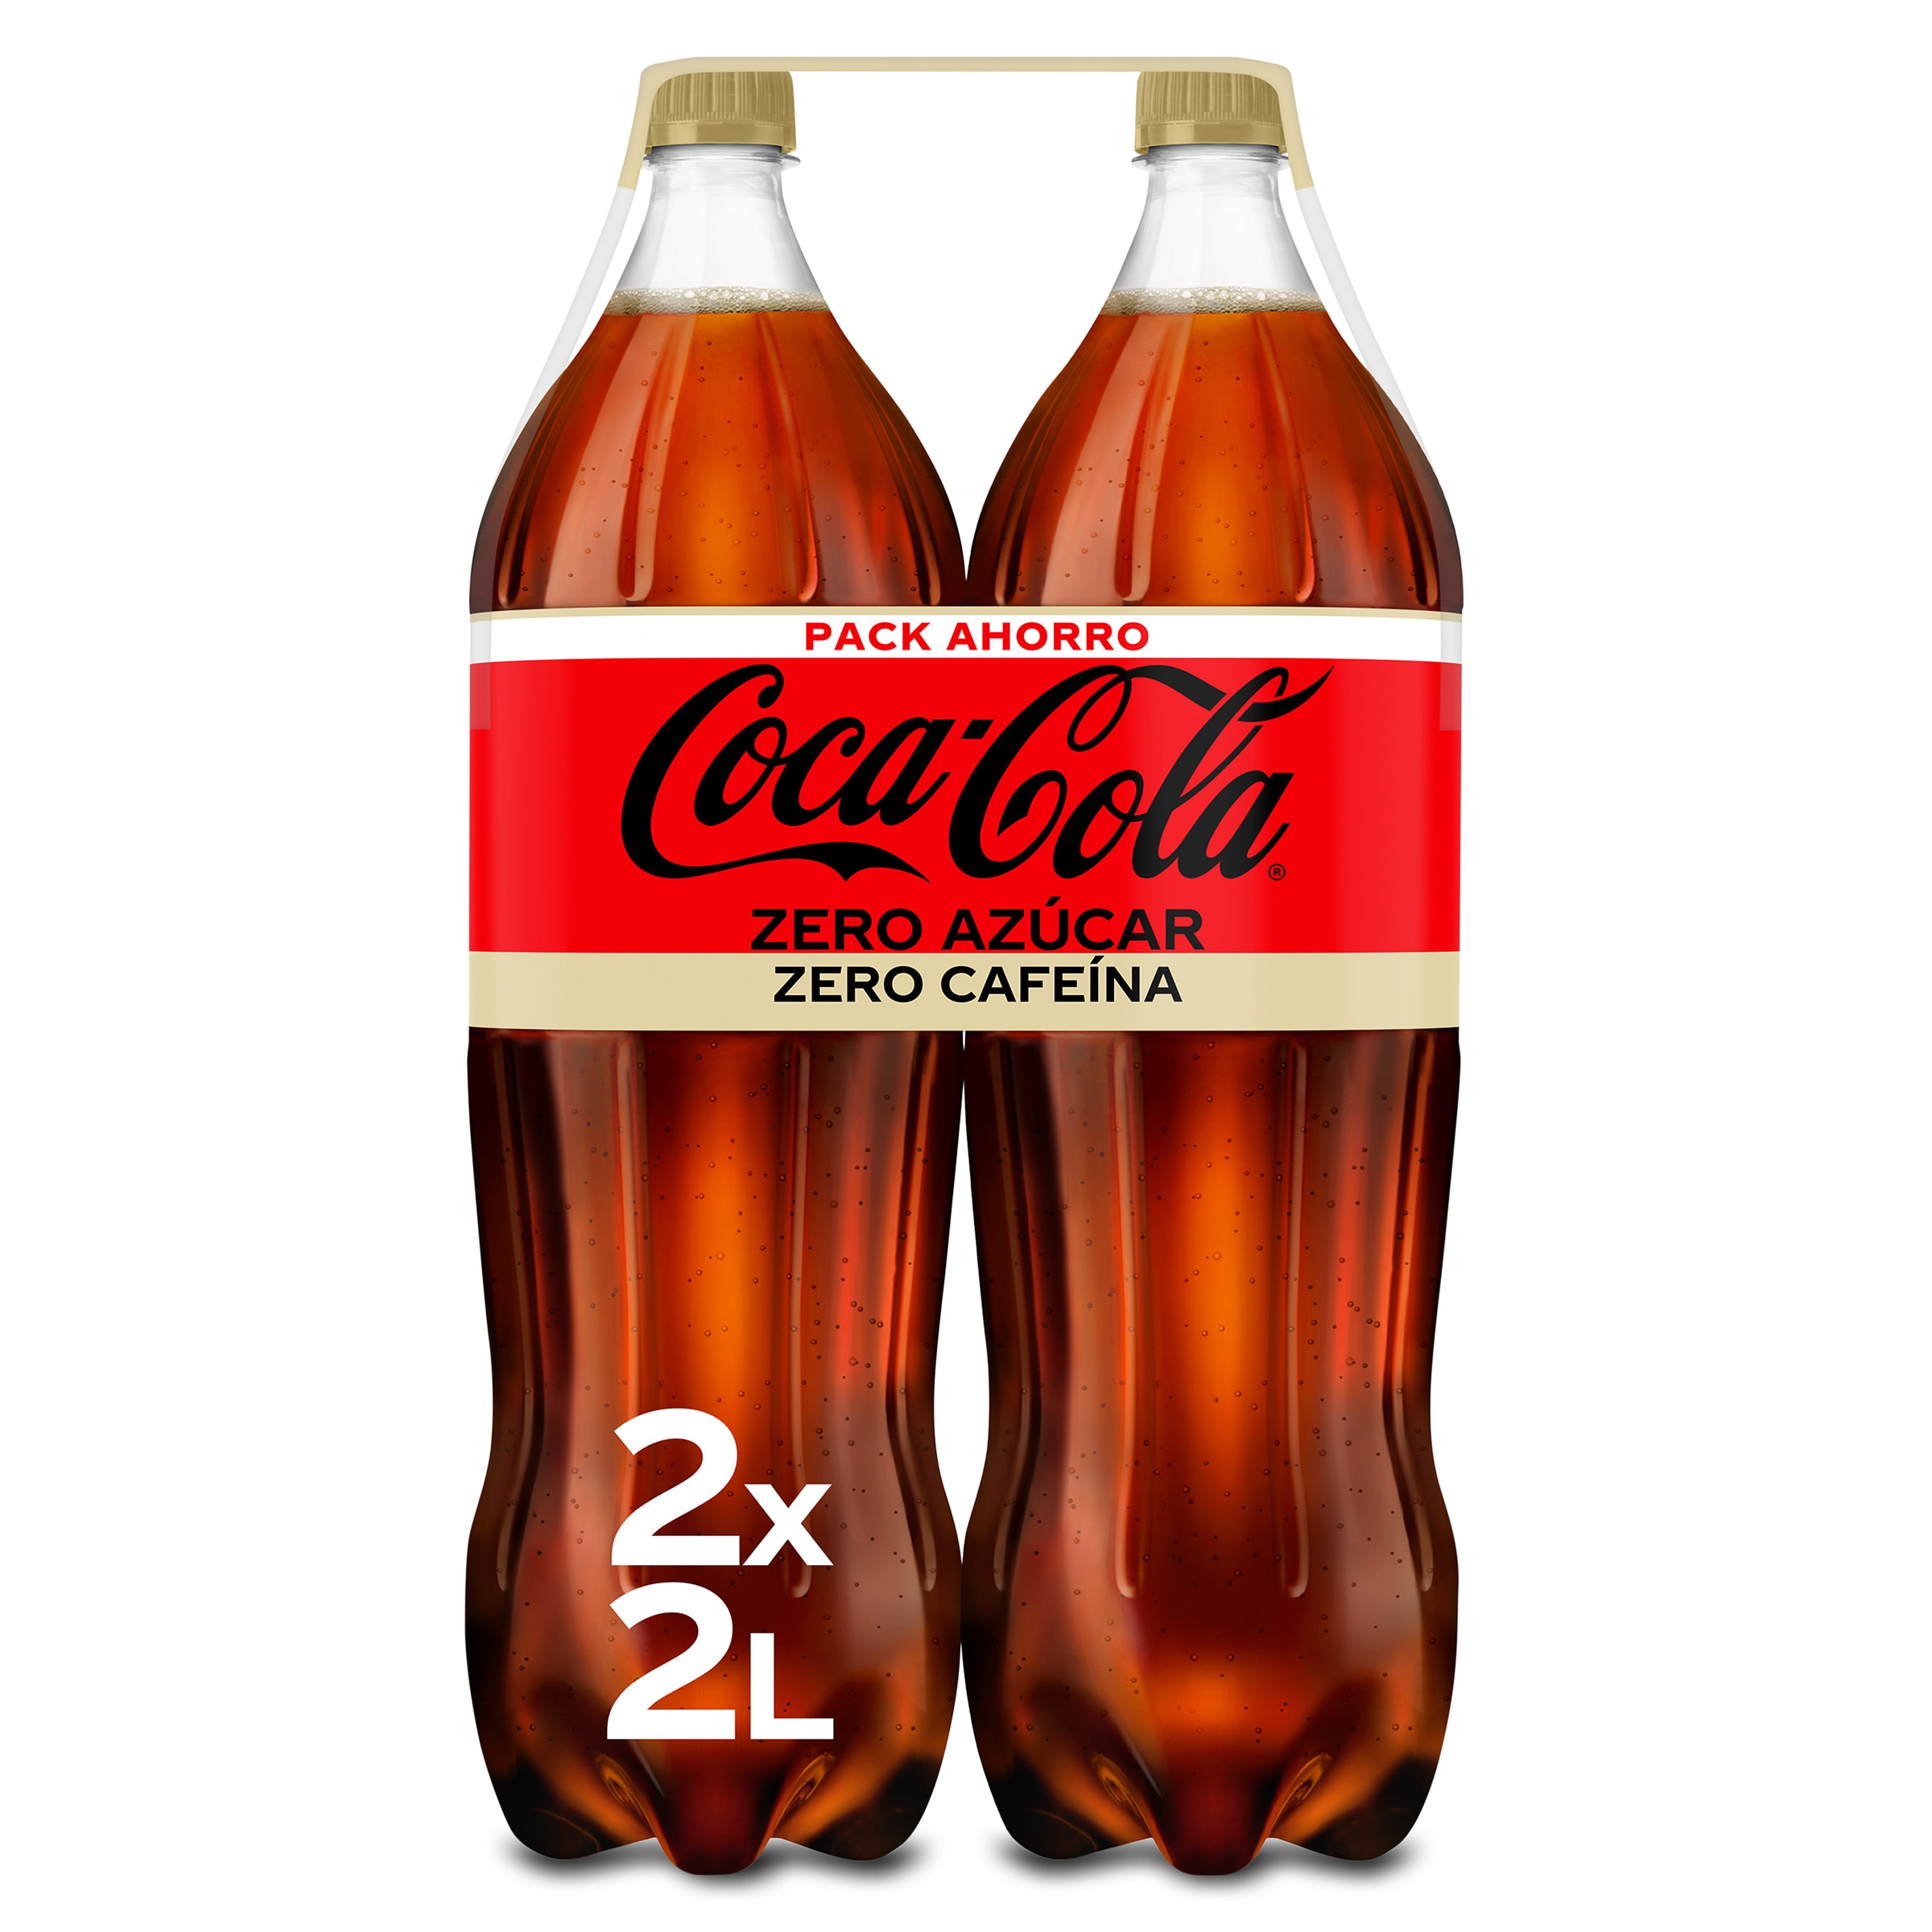 Oferta 3x2 Hola Cola zero, Dia España